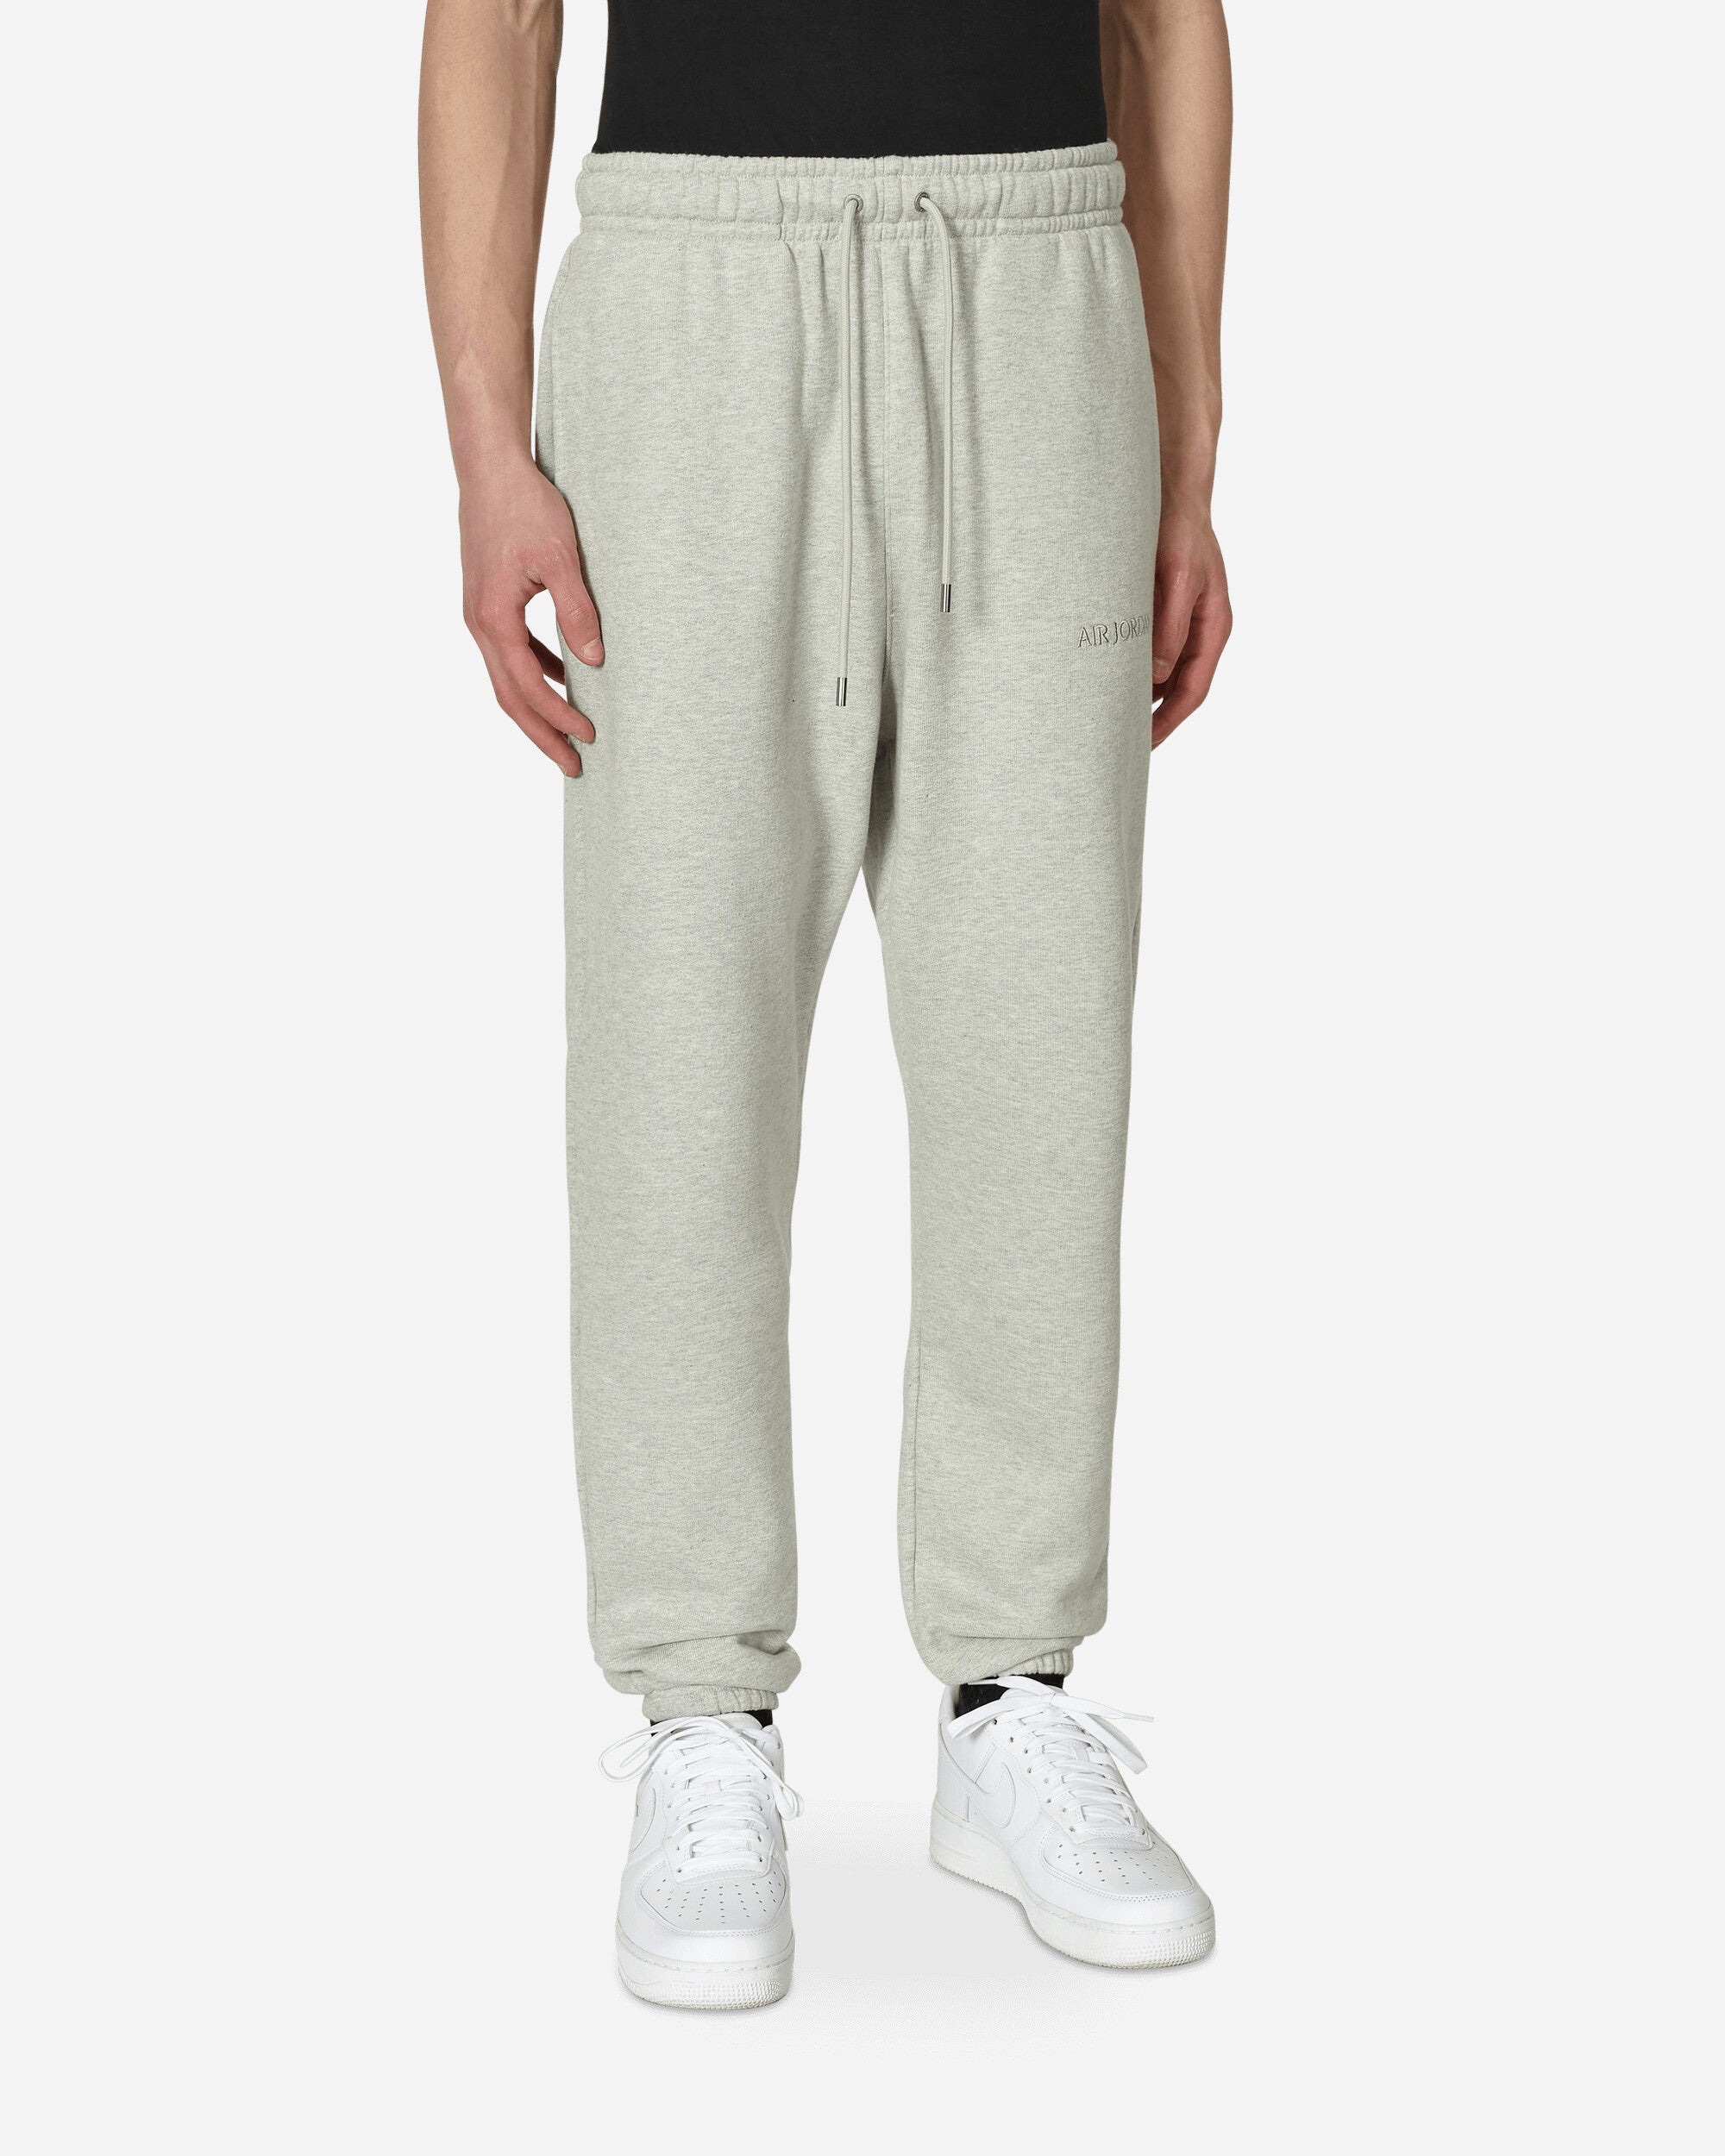 Wordmark Fleece Pants Grey